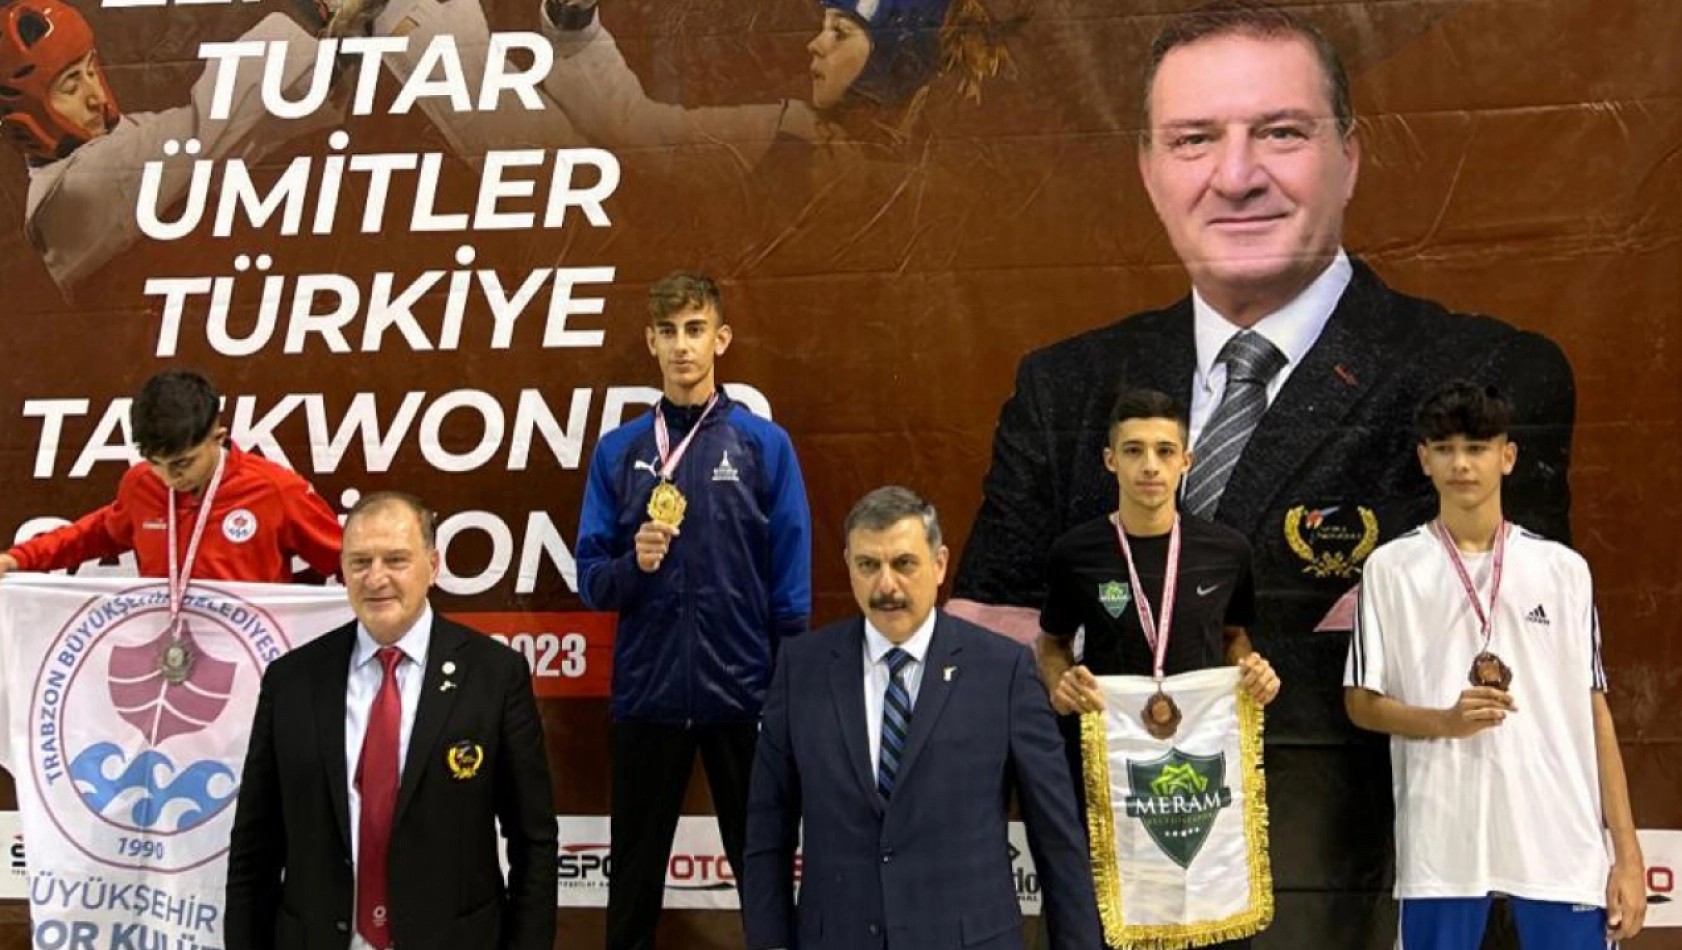 Meramlı sporcu Türkiye üçüncüsü oldu